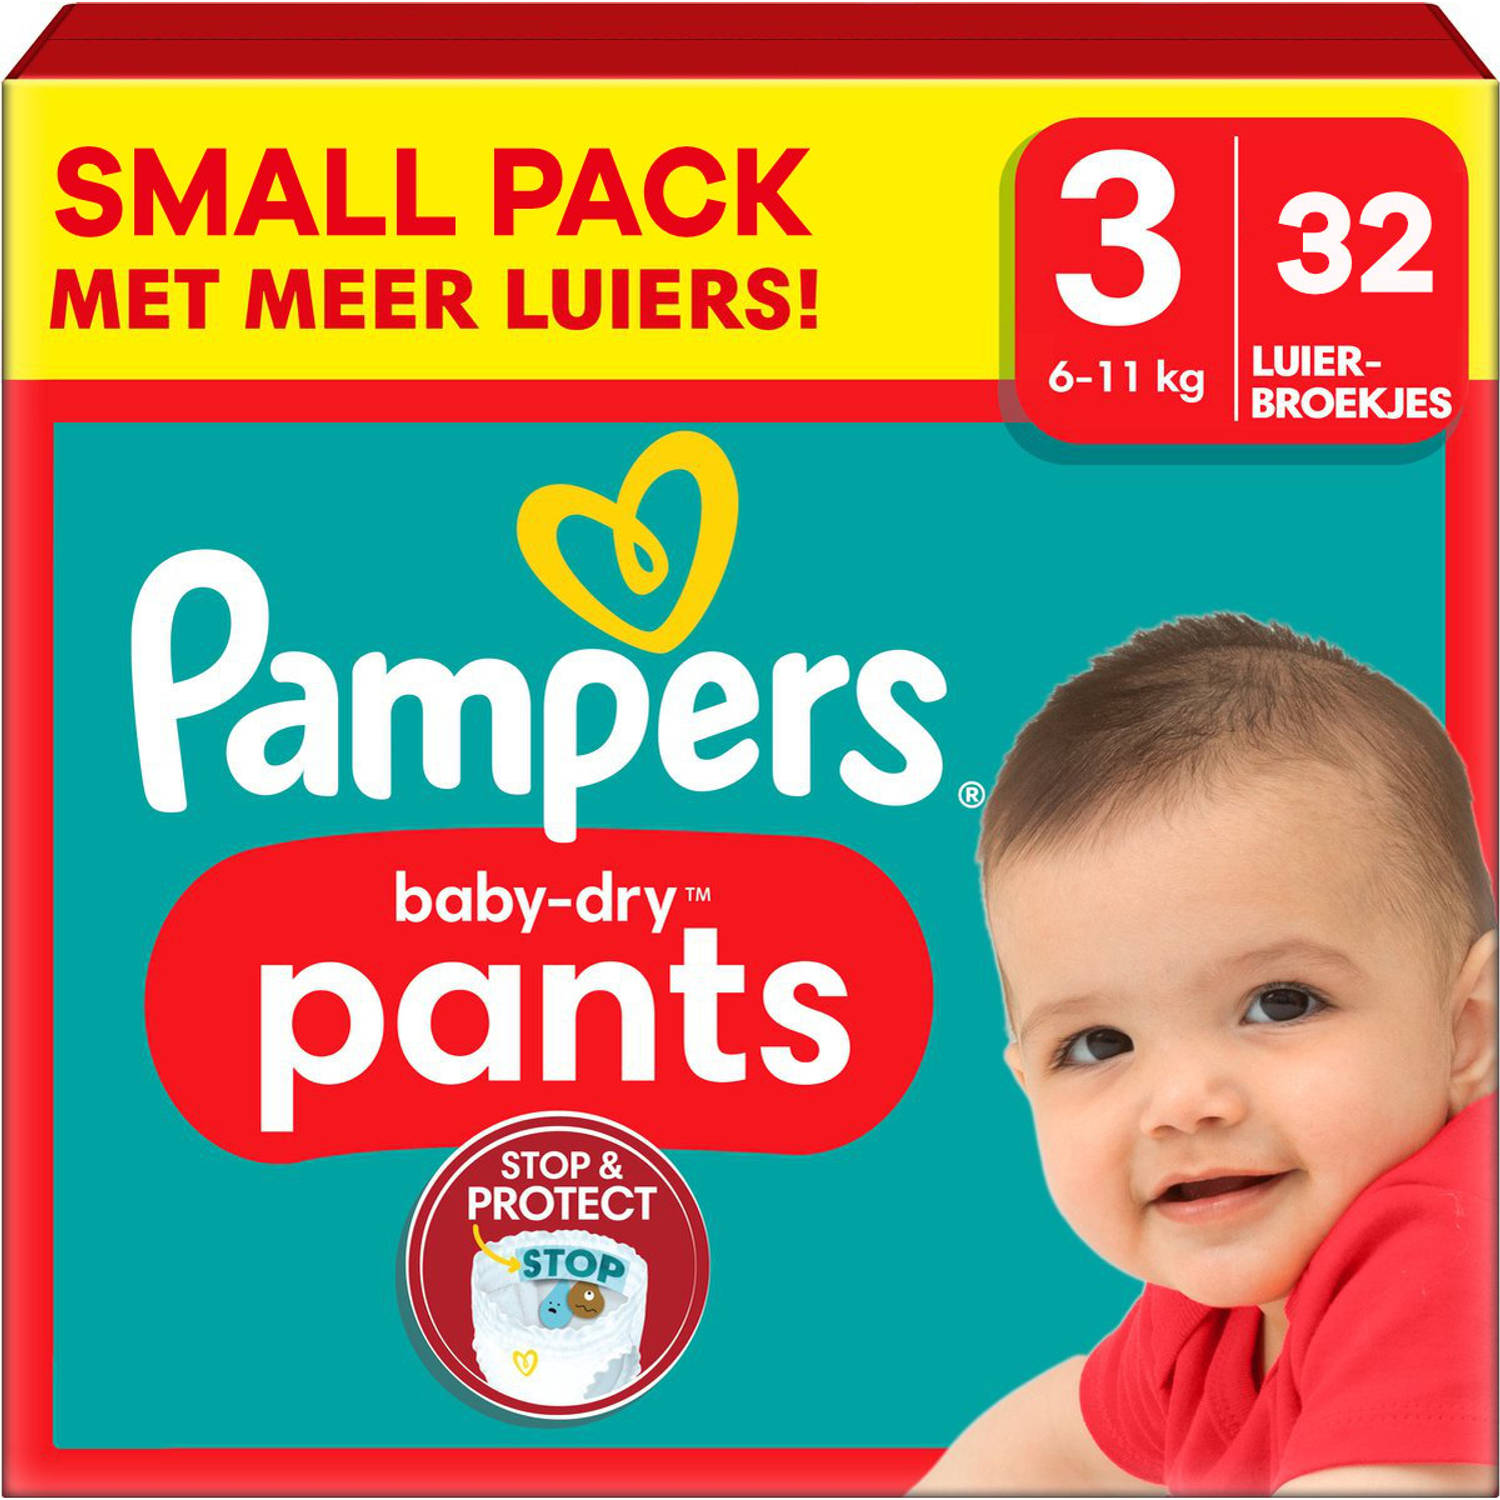 Pampers Baby Dry Pants Maat 3 Small Pack 32 luierbroekjes